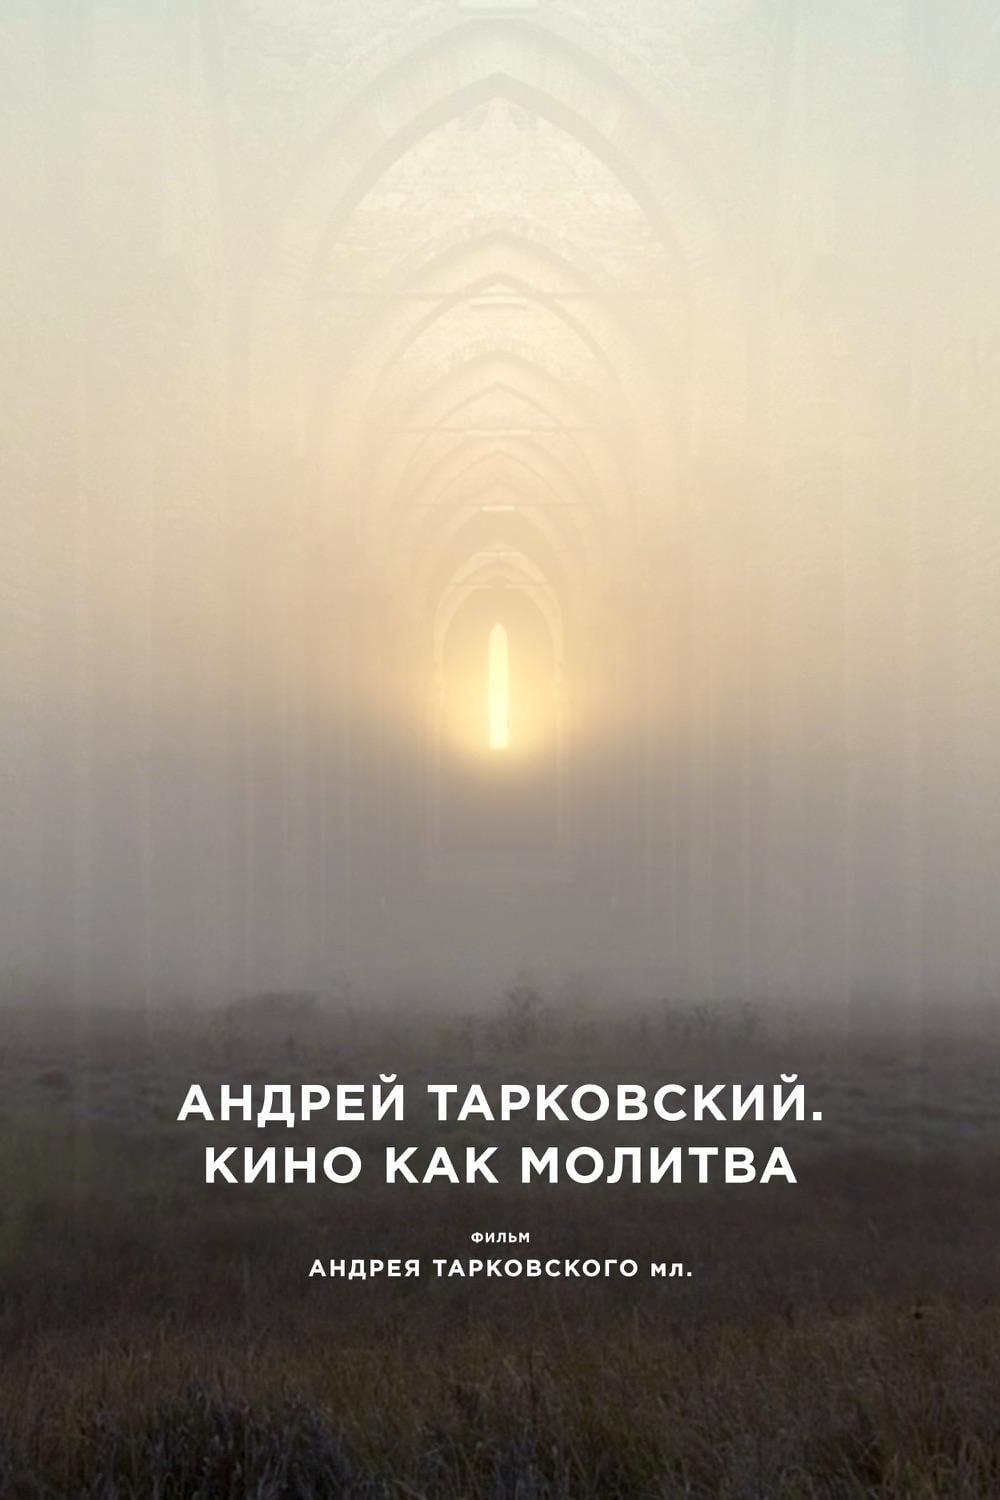 Андрей Тарковский. Кино как молитва poster